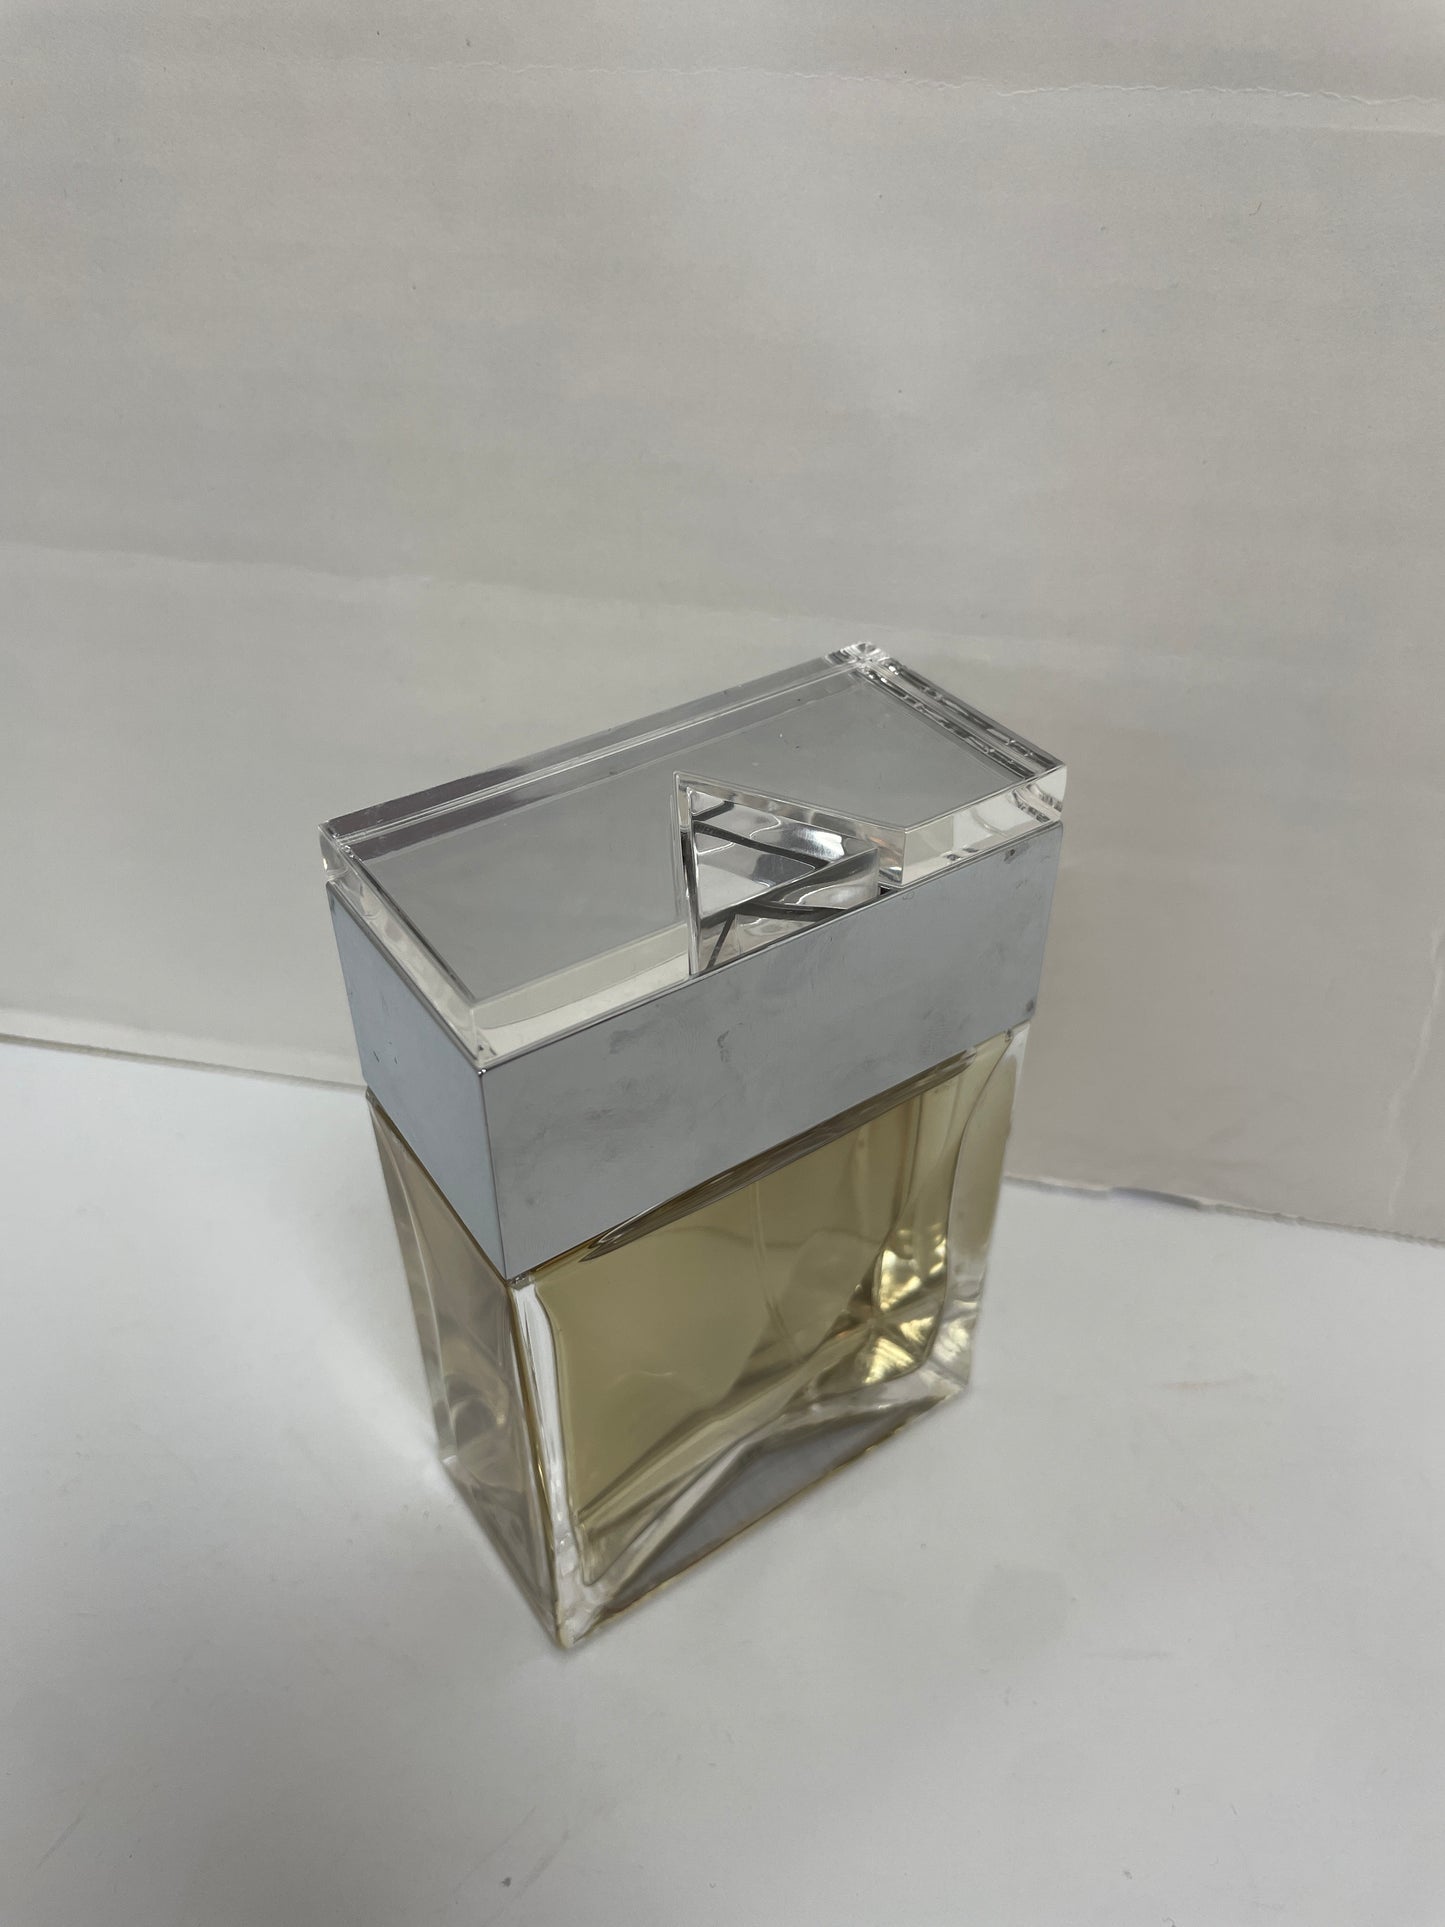 Fragrance Designer By Michael Kors